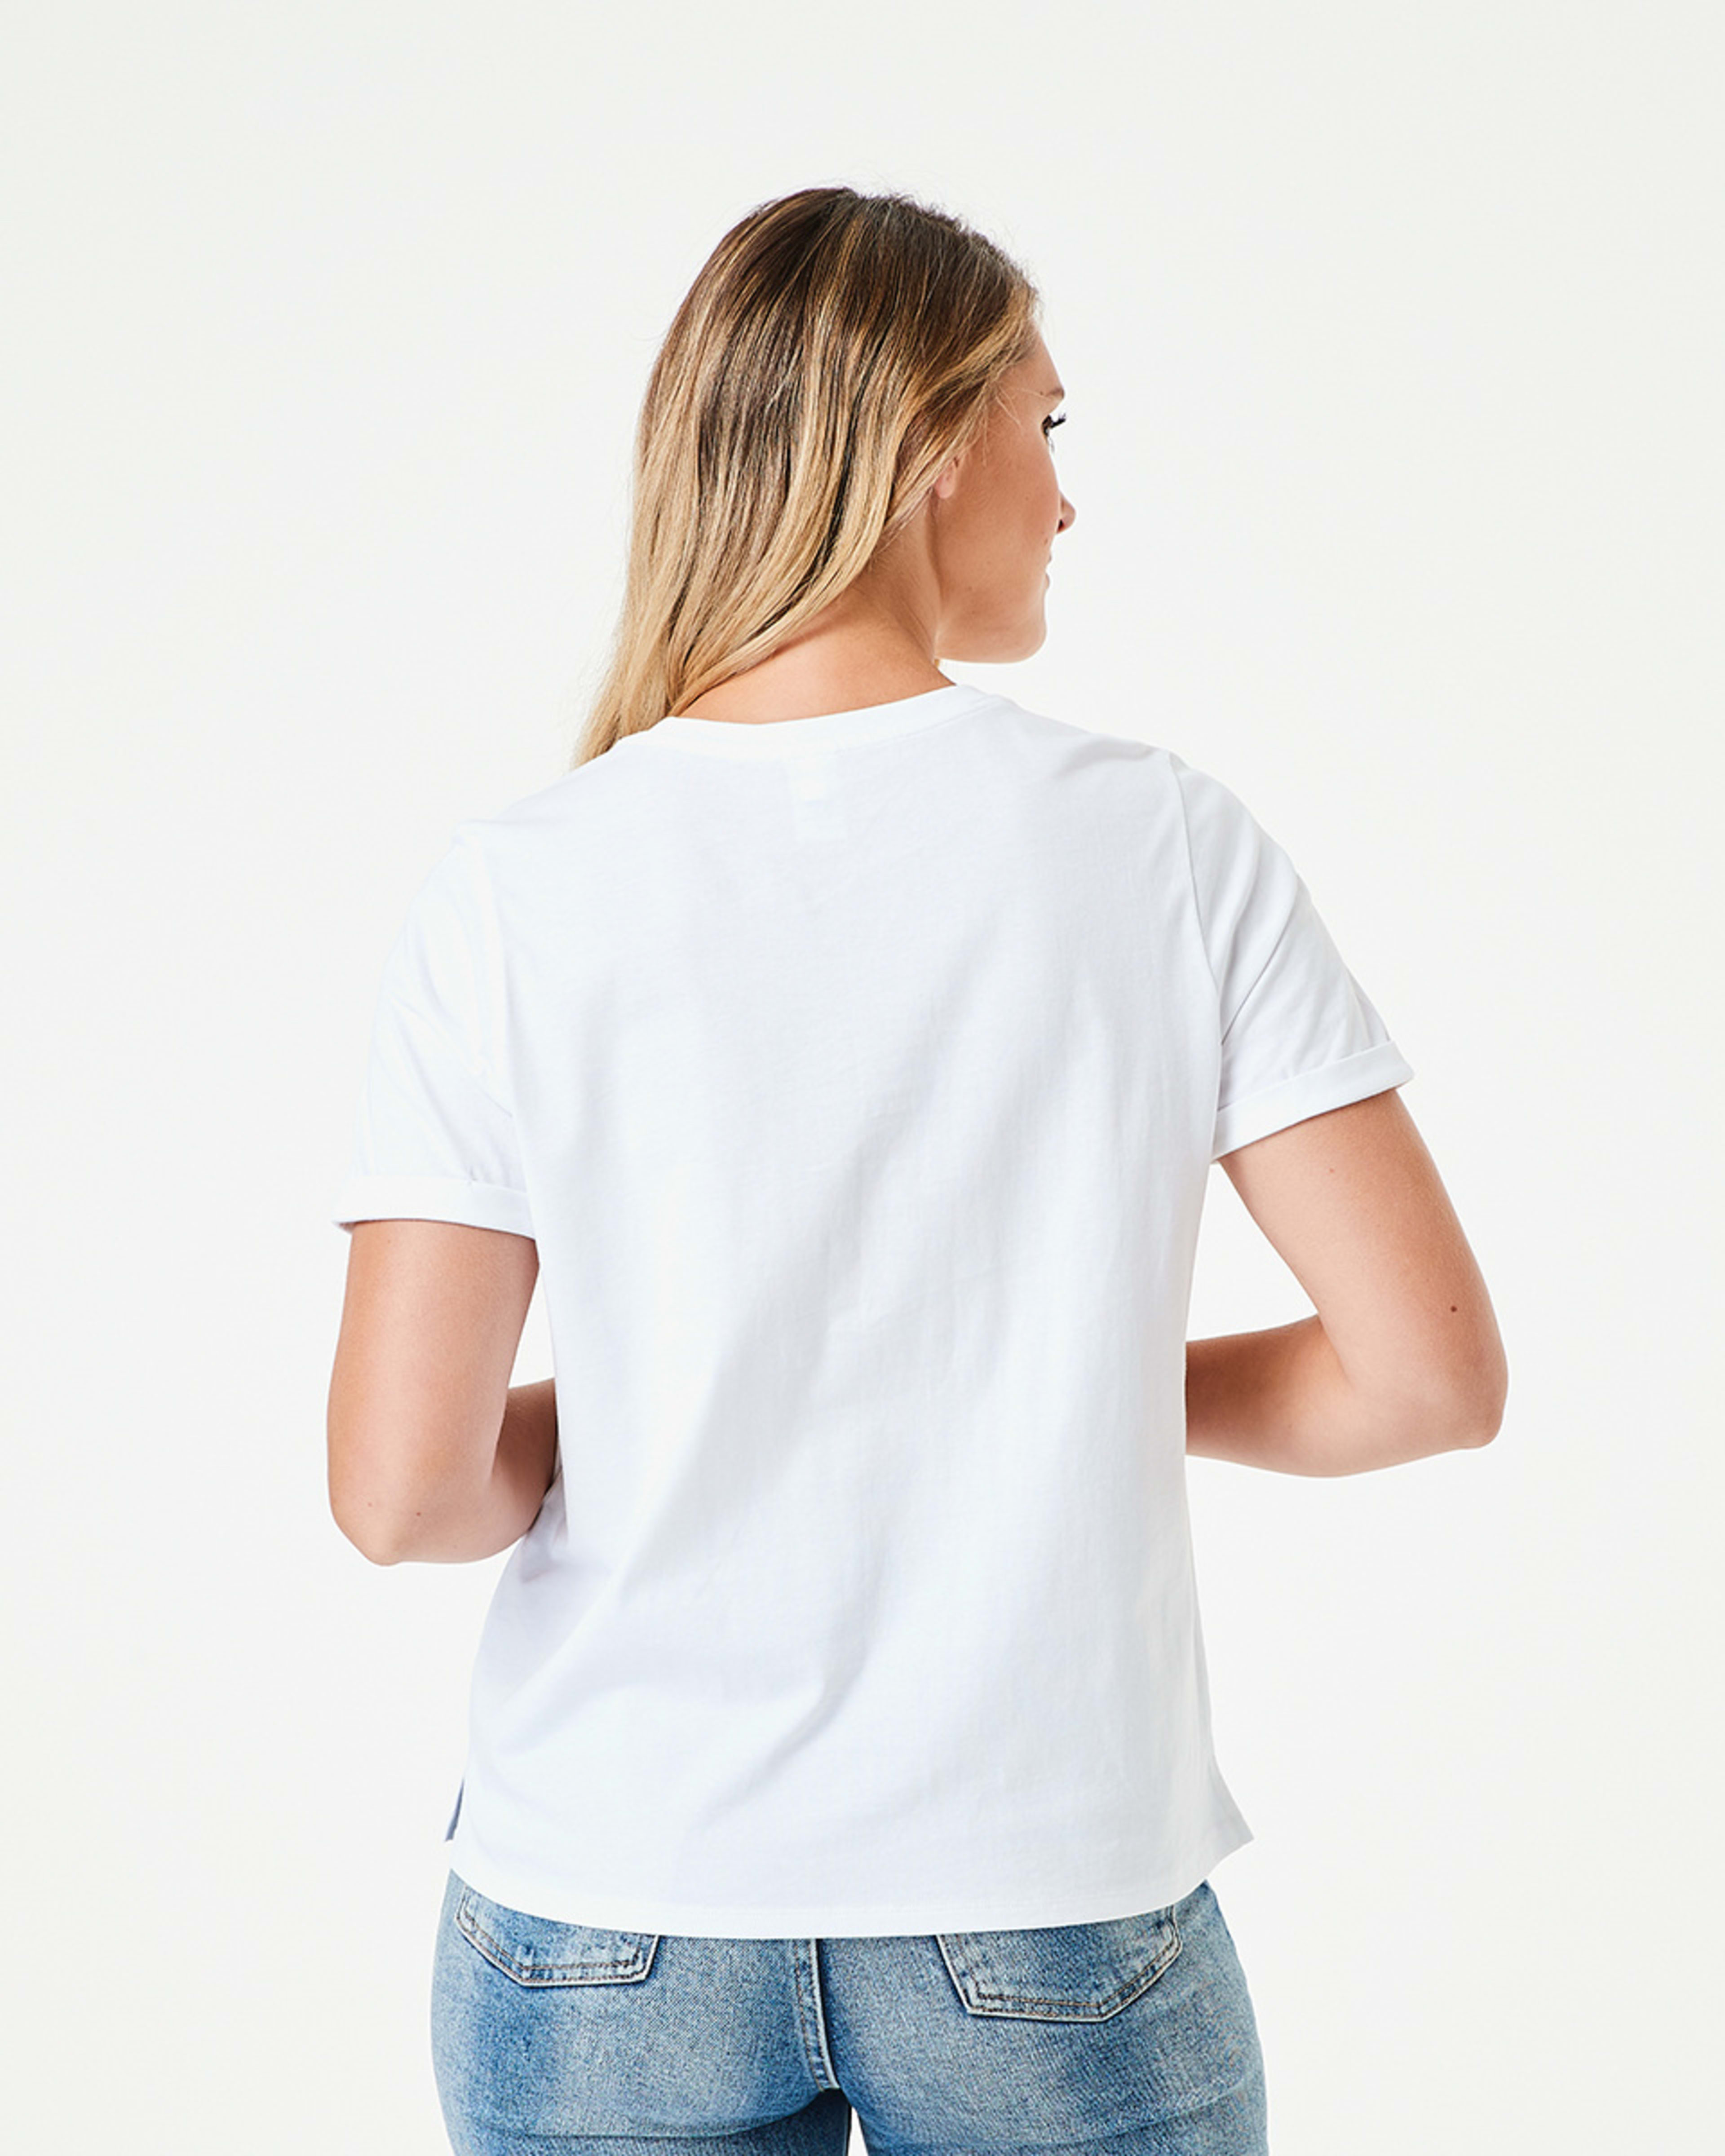 Short Sleeve Australian Cotton T-shirt - Kmart